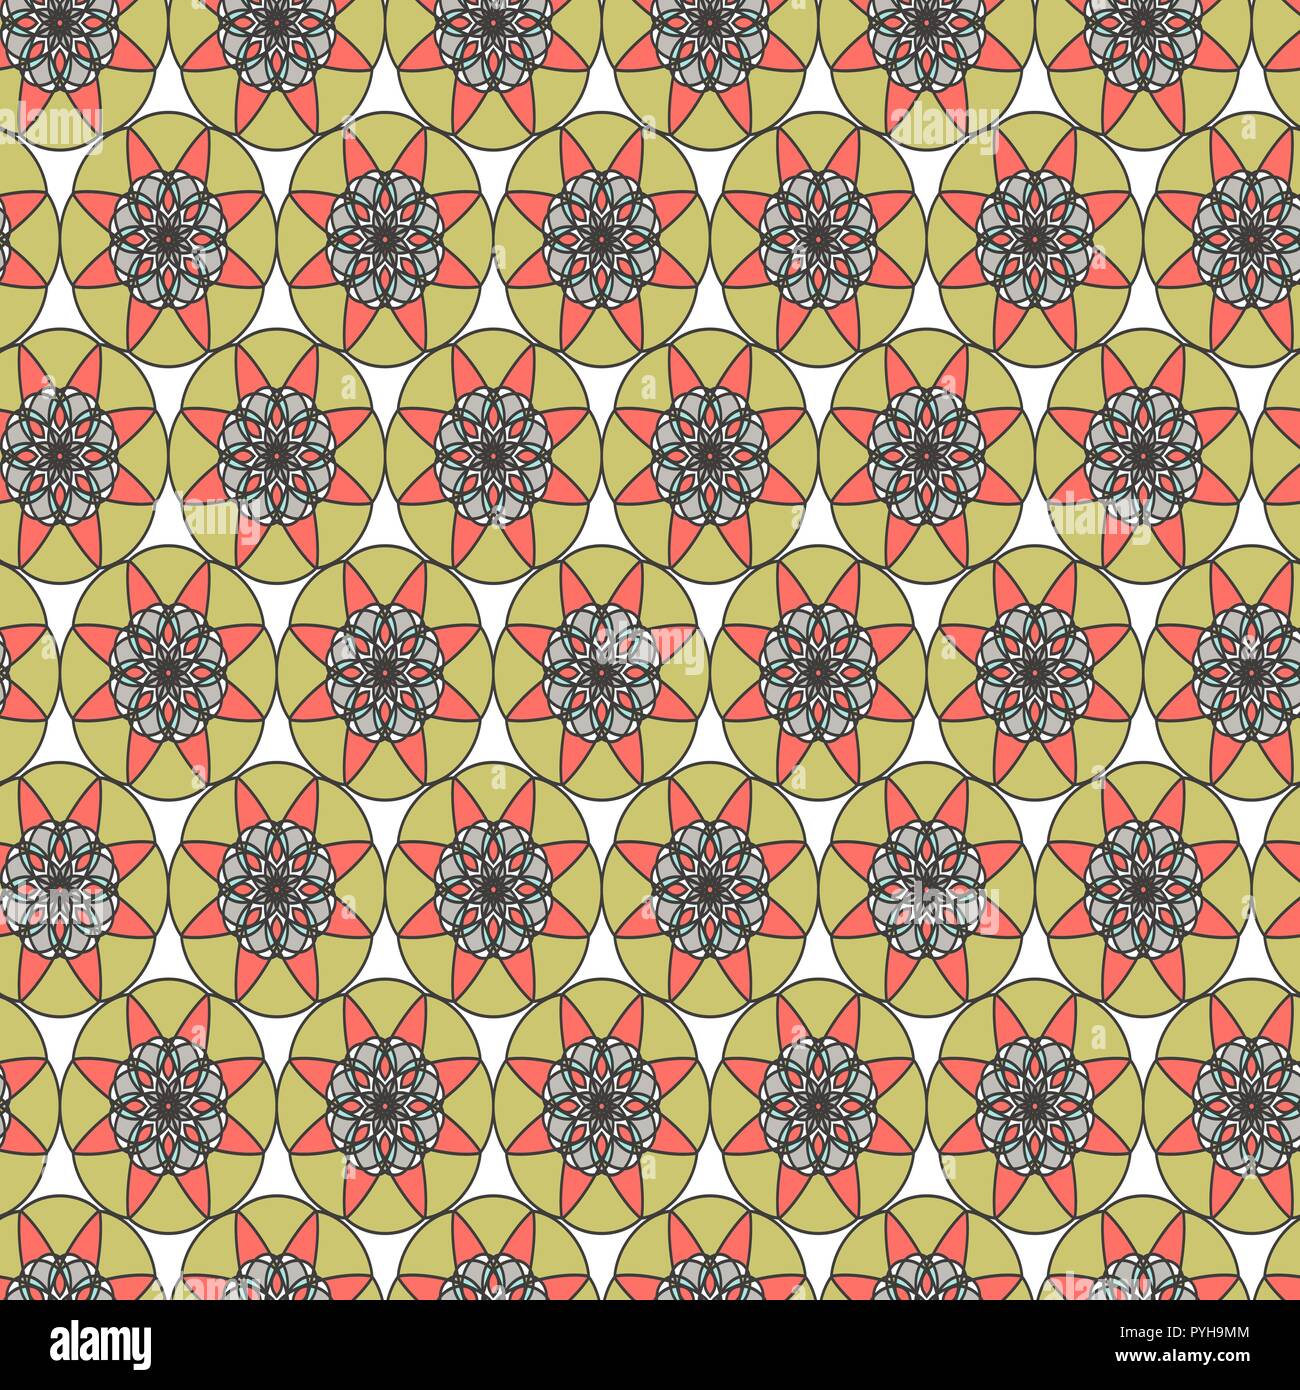 Abstract pattern délicate avec mandala en gris, kaki, bleu et teintes rose sur le fond beige pâle, comme un vecteur seamless texture tissu Illustration de Vecteur